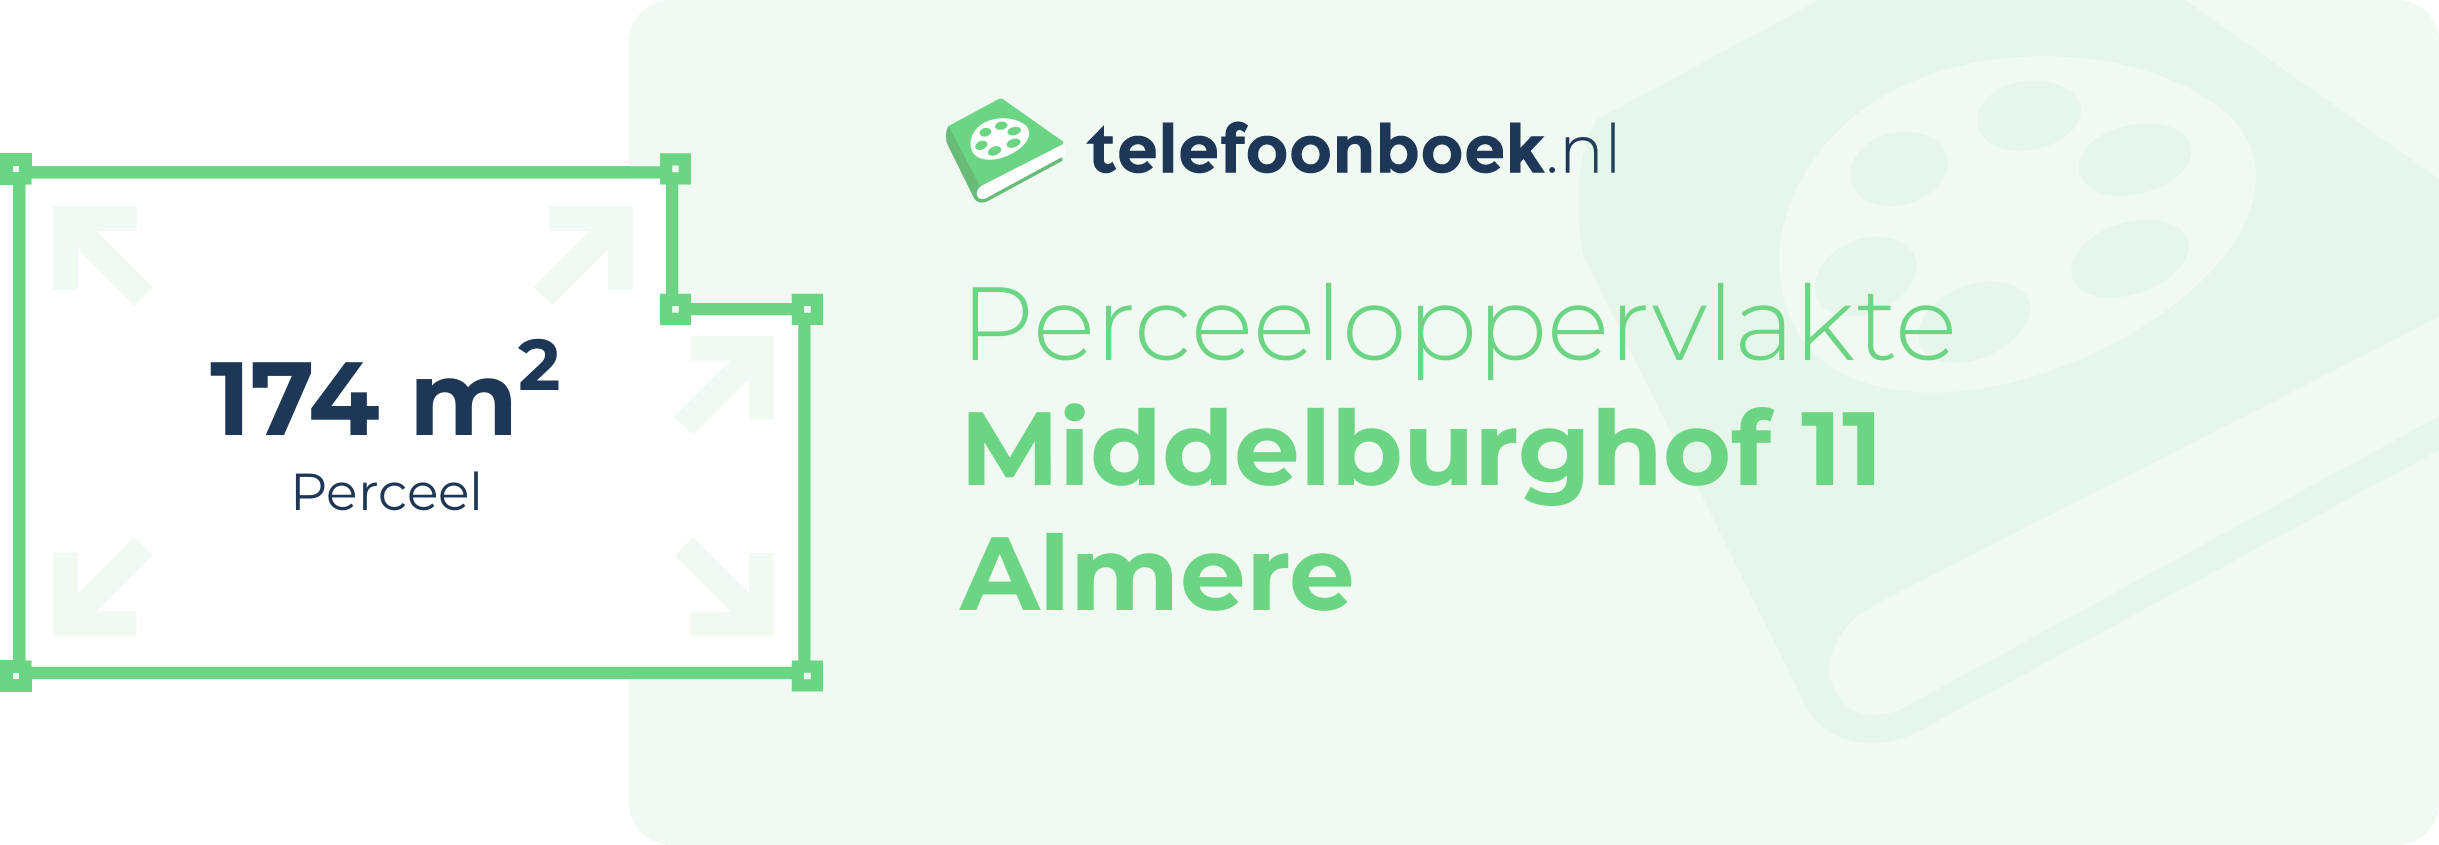 Perceeloppervlakte Middelburghof 11 Almere